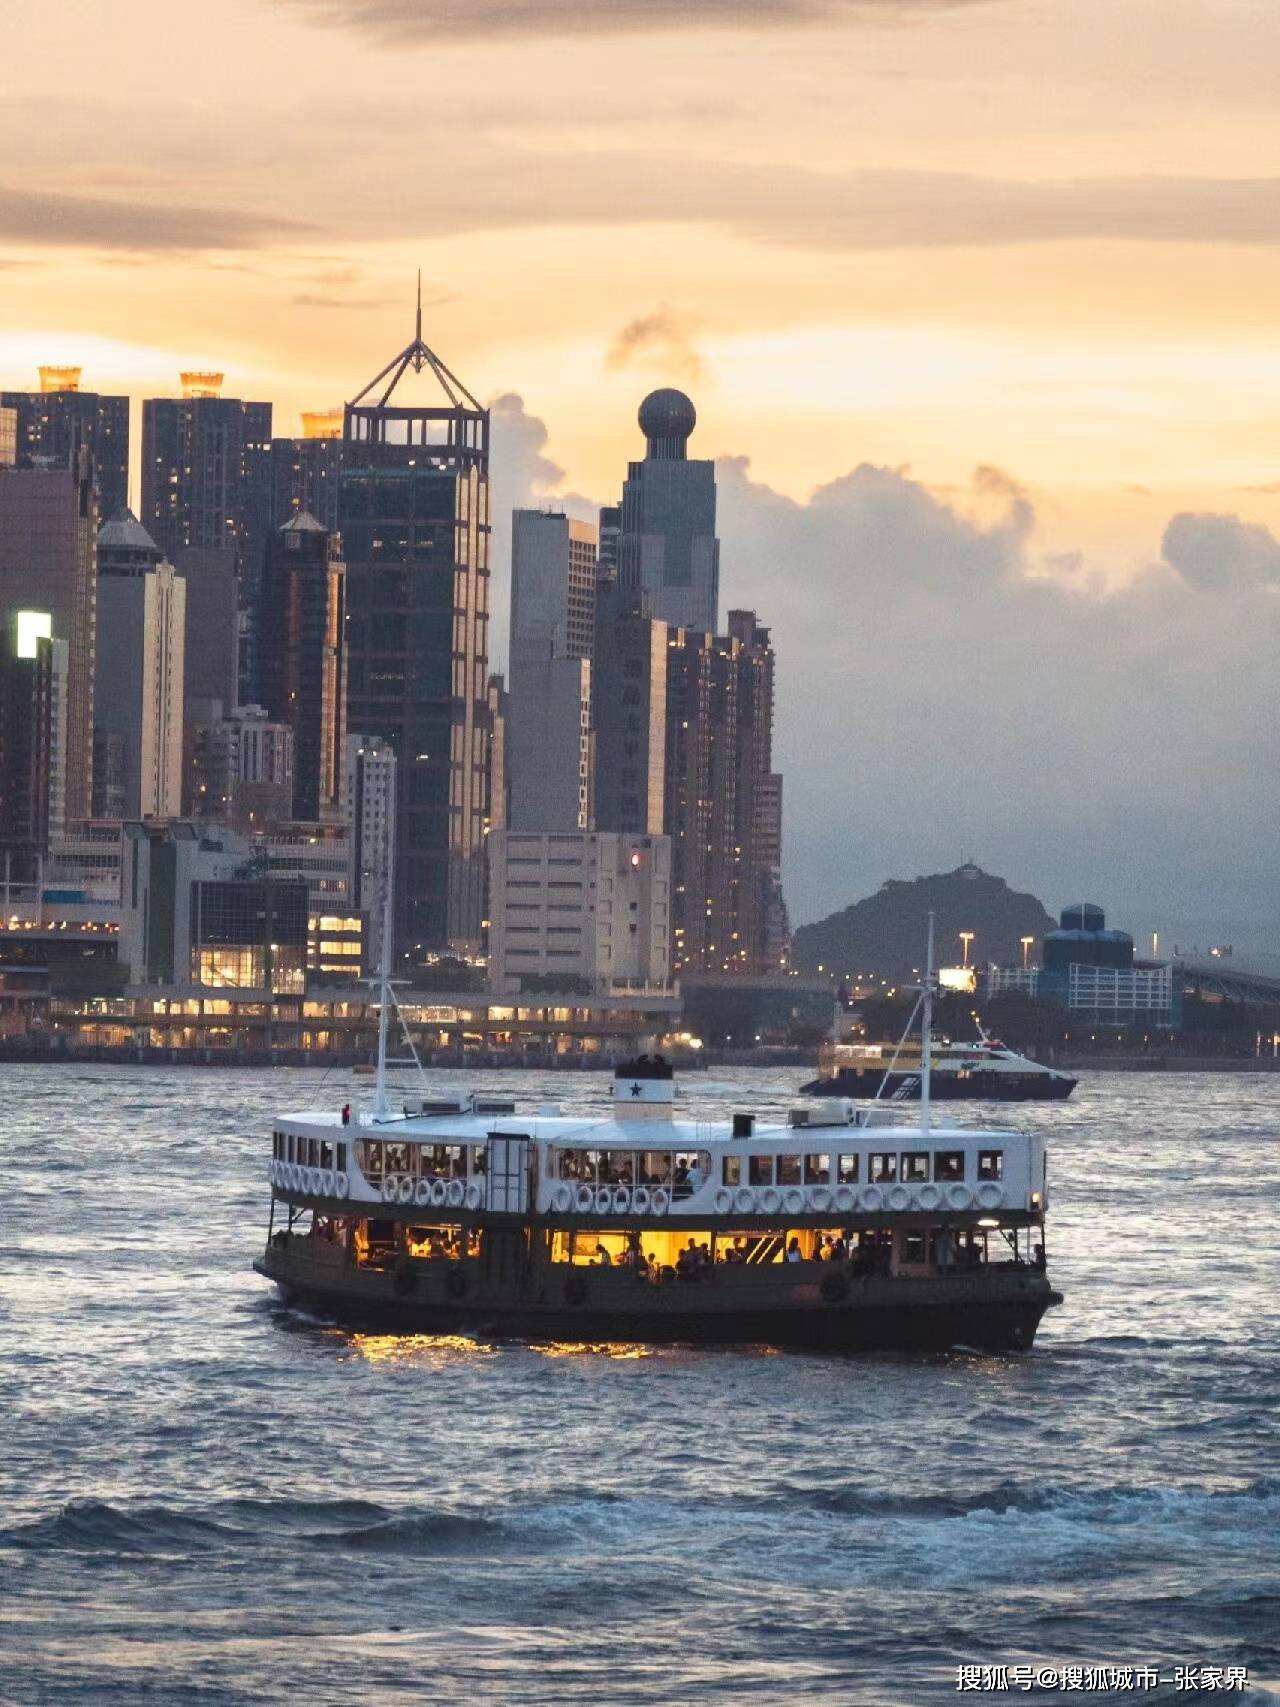 香港三日游景点推荐,干货满满记得看完